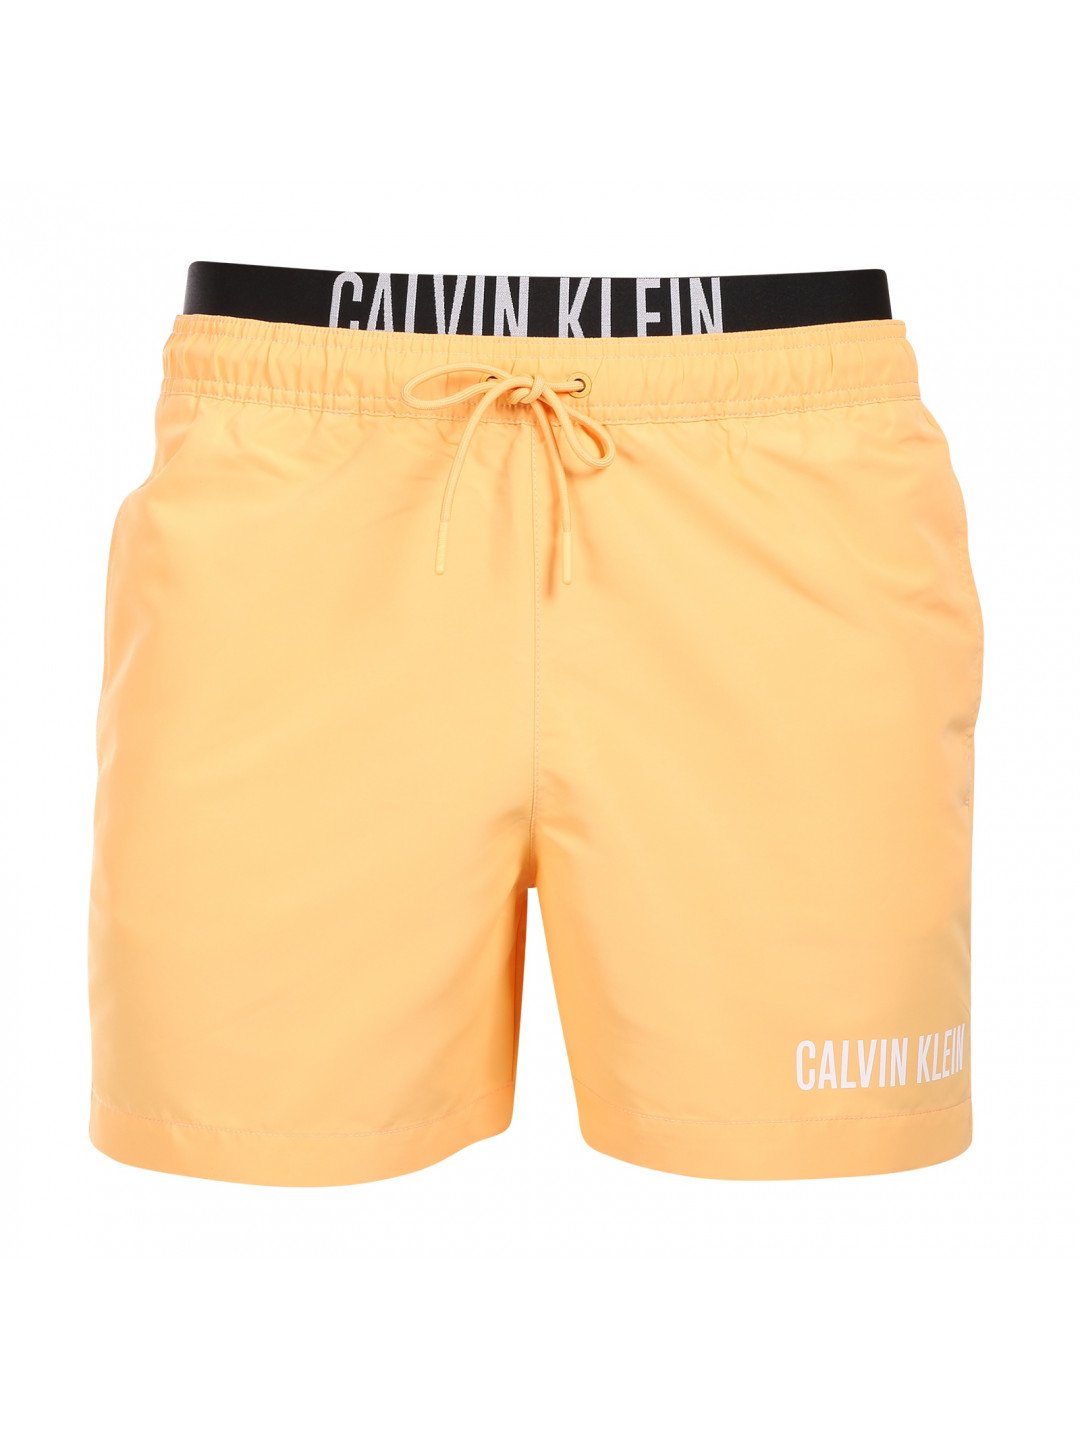 Pánské plavky Calvin Klein oranžové KM0KM00992-SAN L